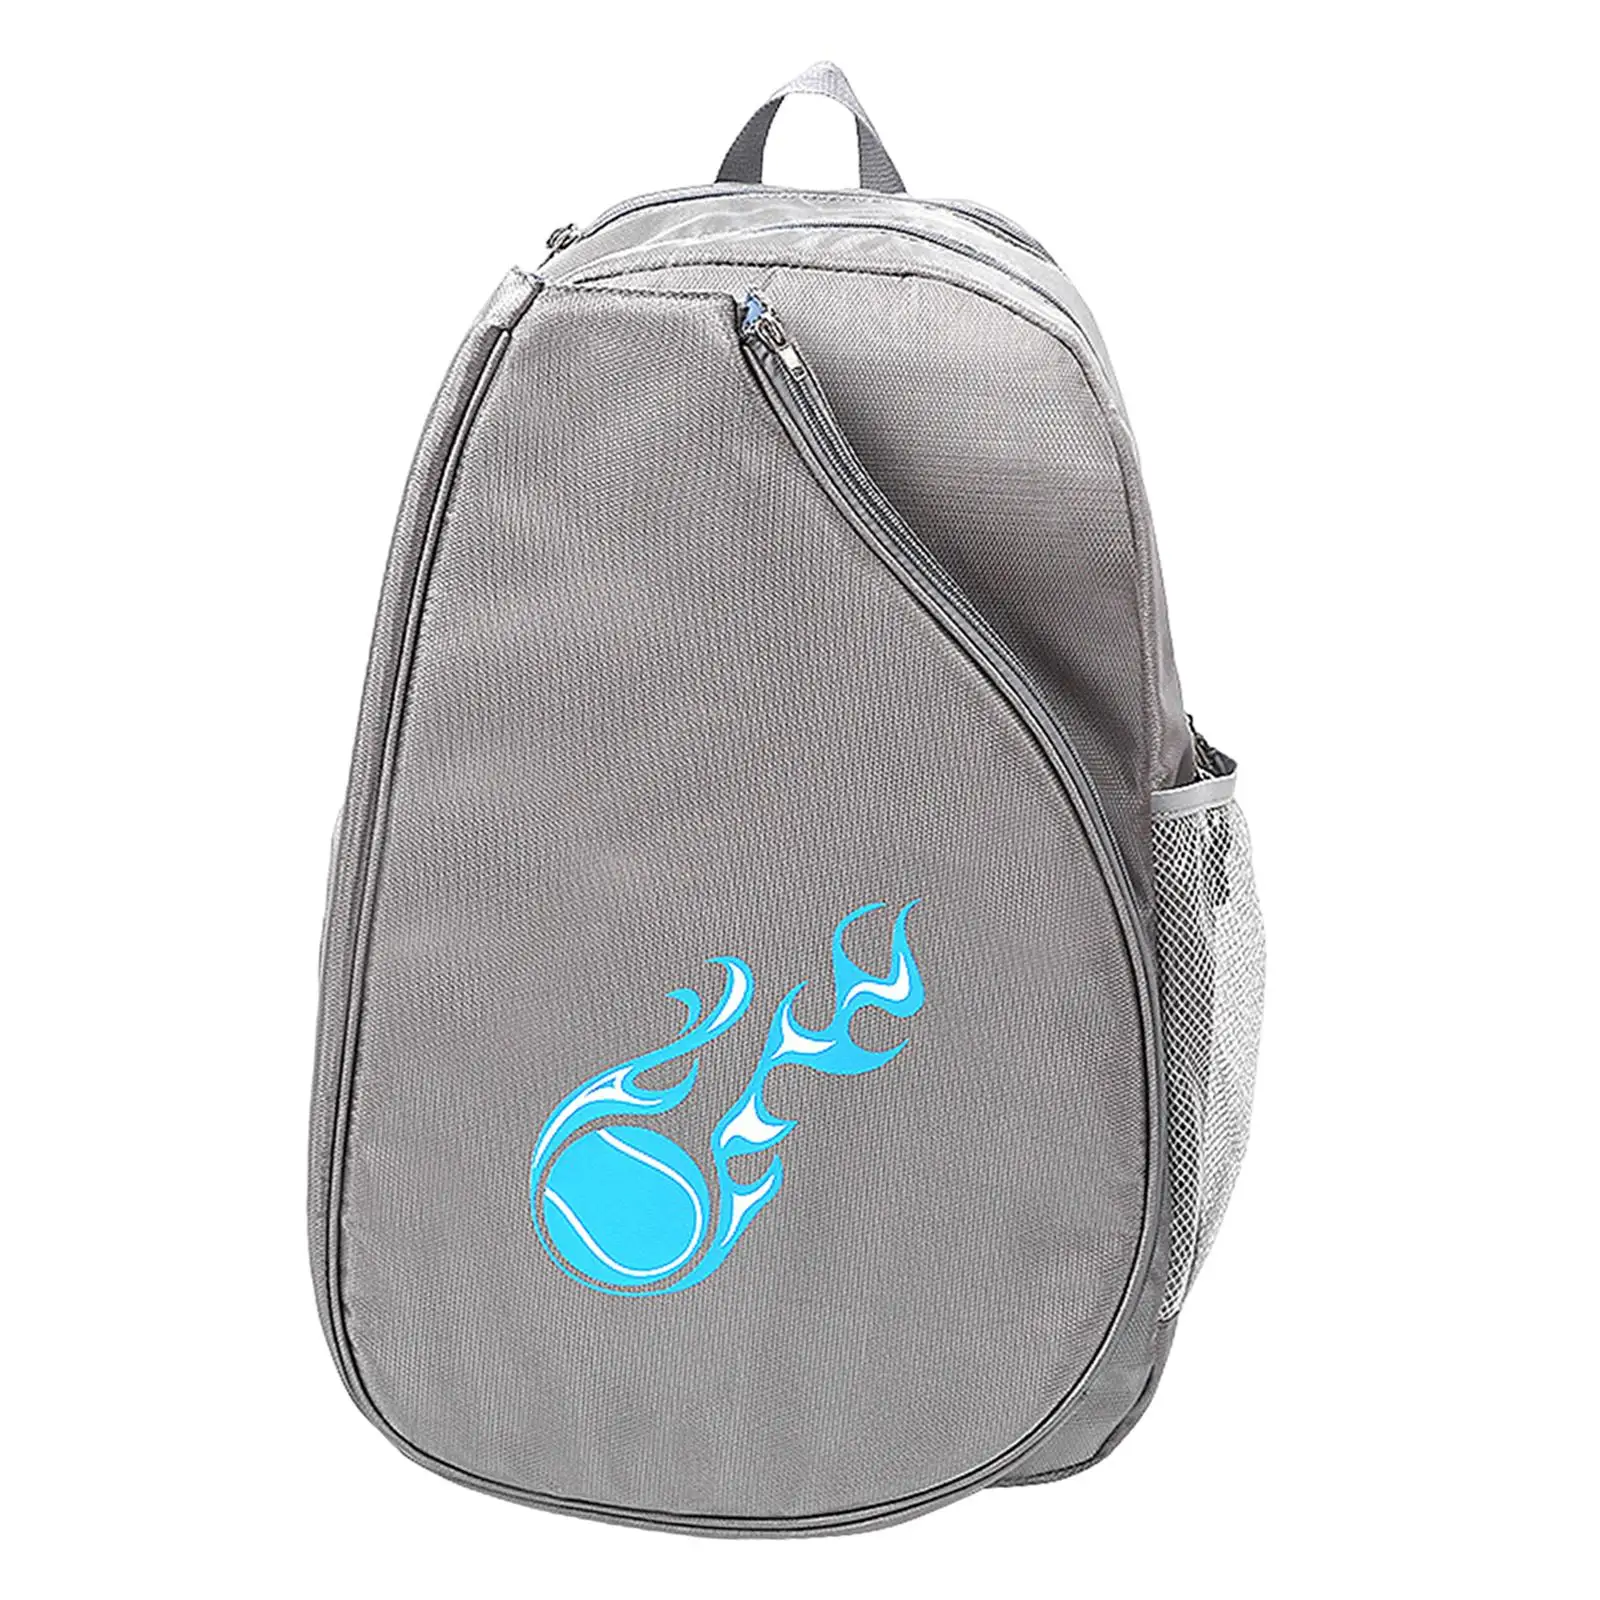 Pickleball Paddles Backpack Tote Waterproof Tennis Racquet Tennis Racket Bag